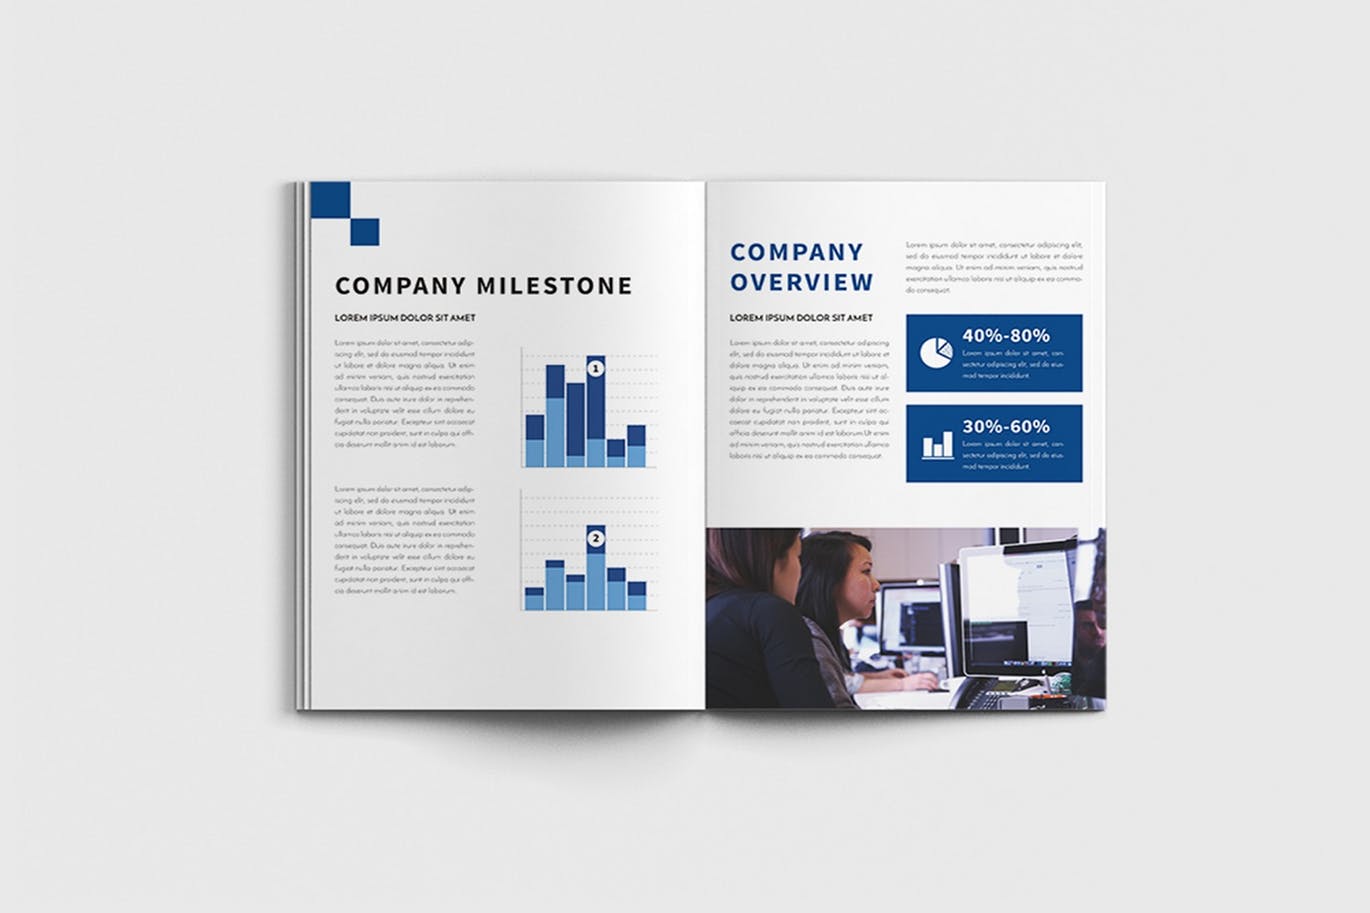 商业计划书/企业简介宣传画册设计模板 Walkers – A4 Business Brochure Template插图9